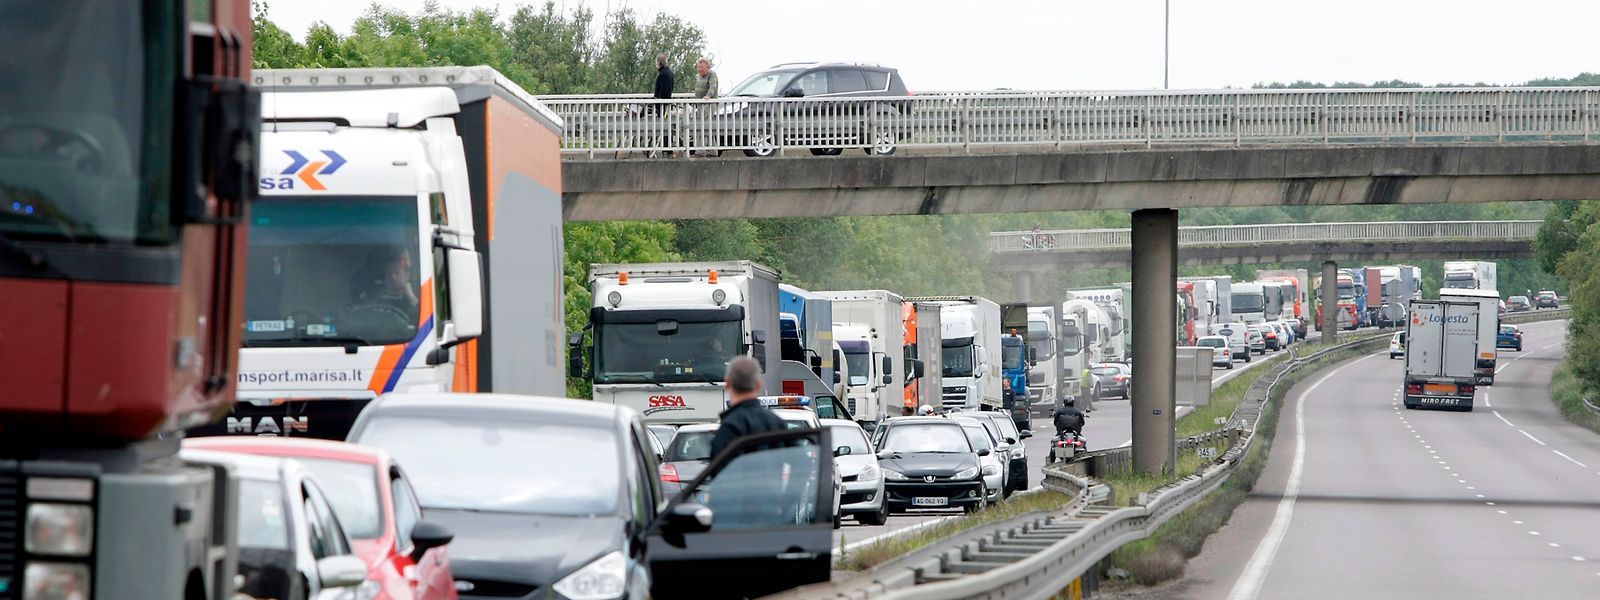 Les embouteillages, une scène qui se répète en semaine sur les routes et autoroutes d'accès à Luxembourg.